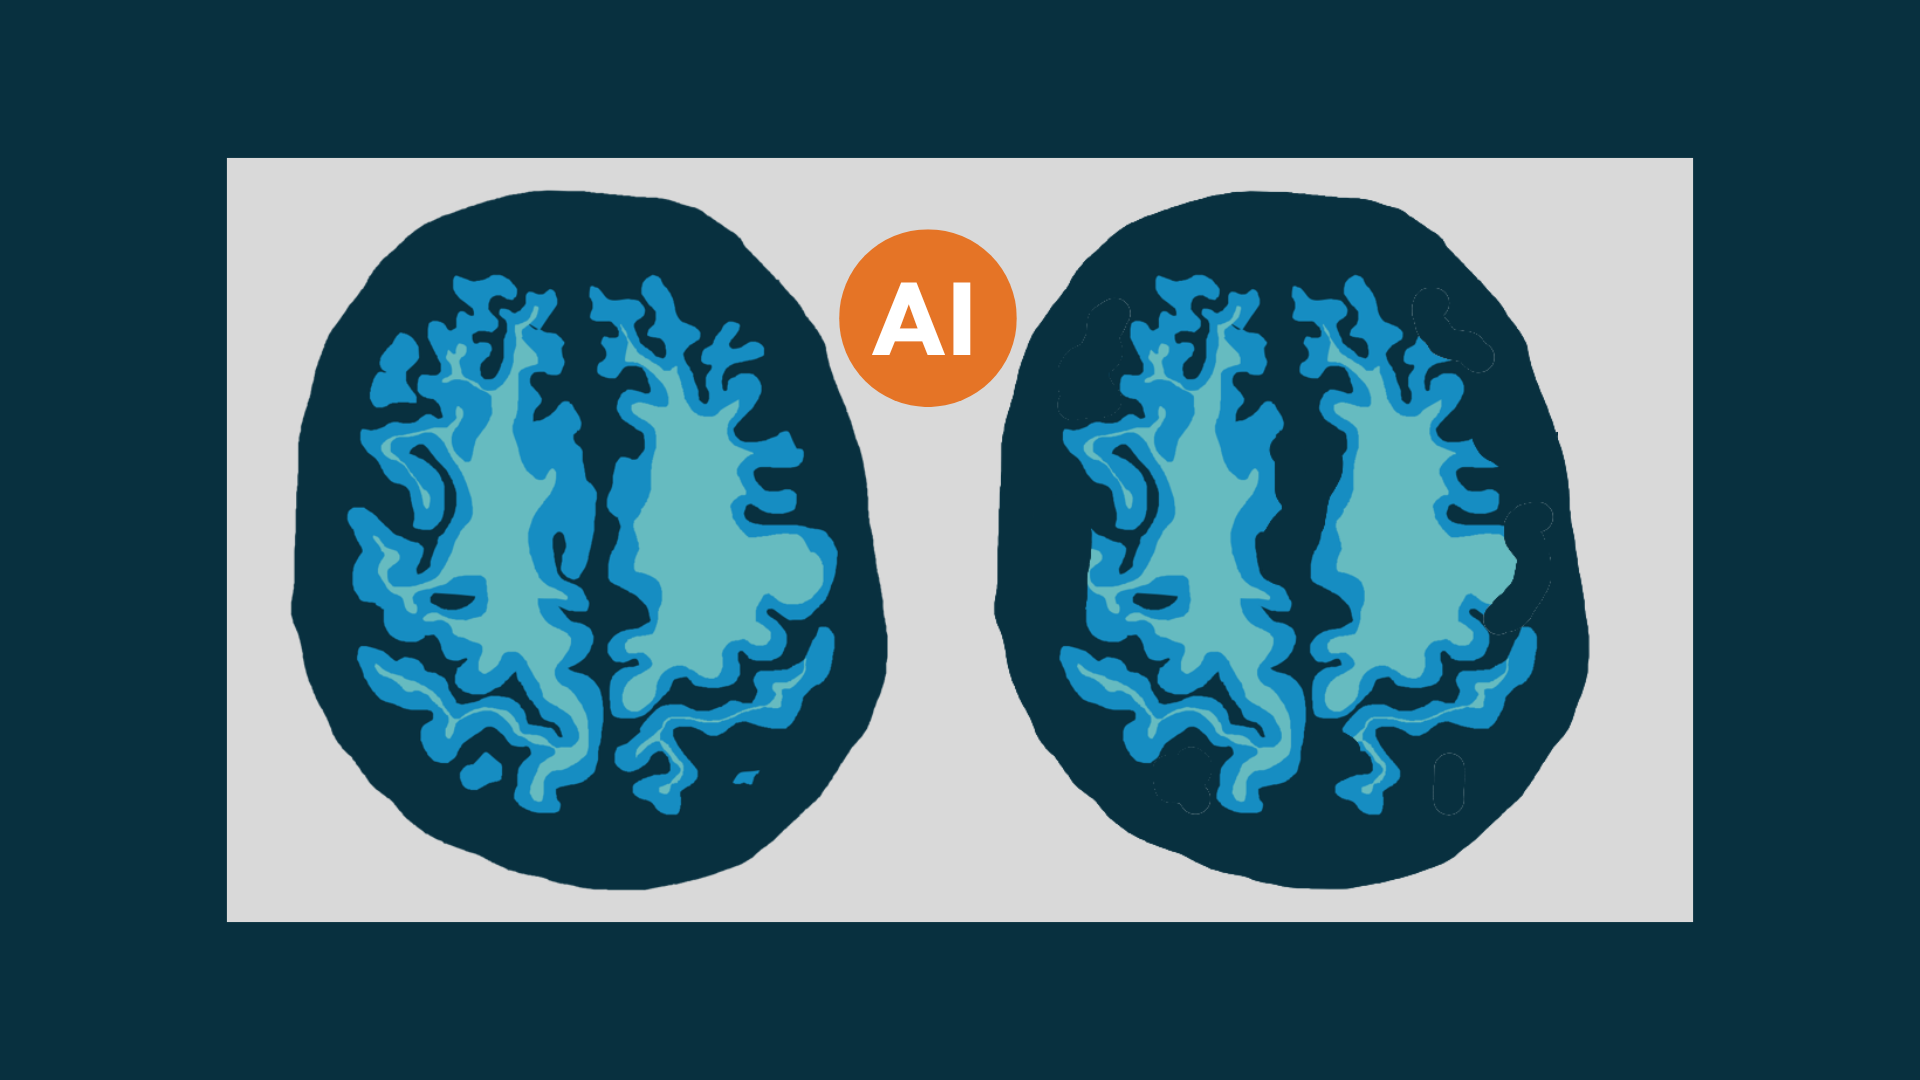 Homepage billboard - Dementia and AI